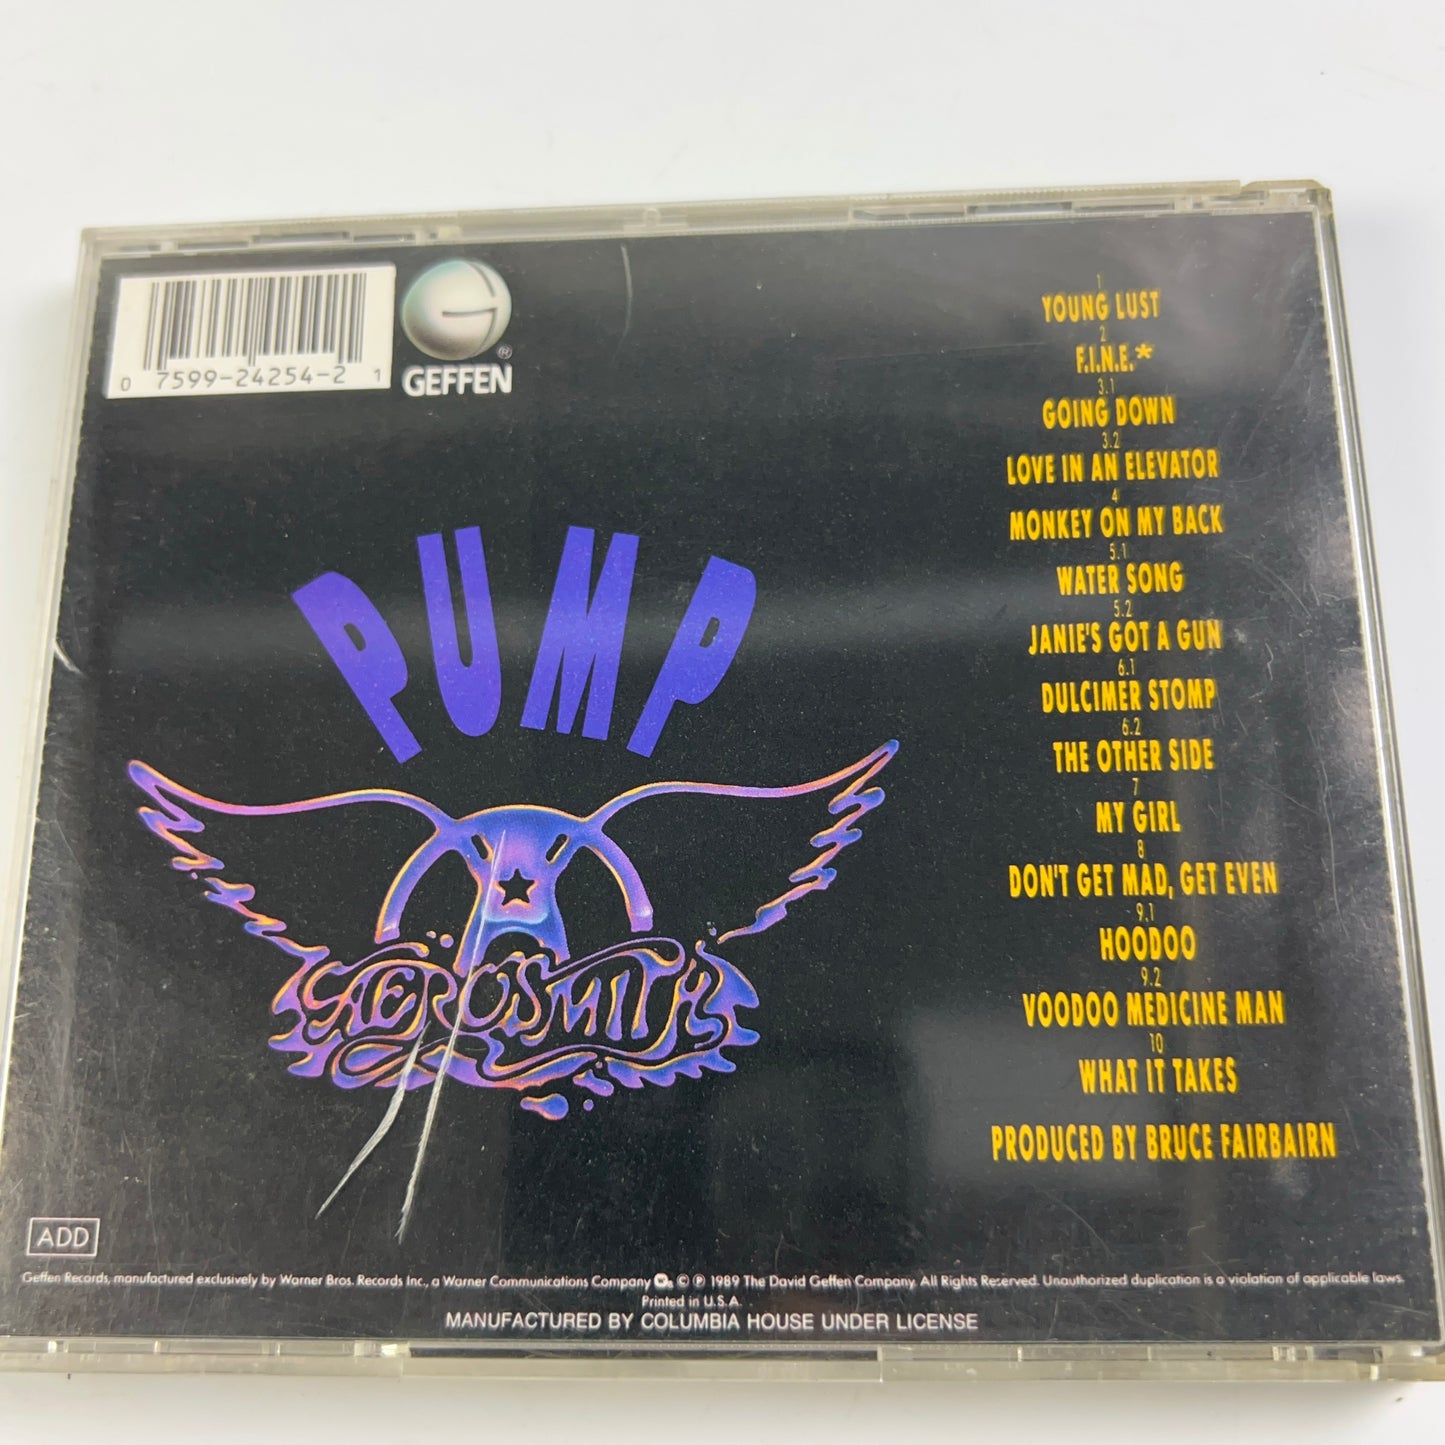 Pump by Aerosmith (CD, 1989, Geffen)